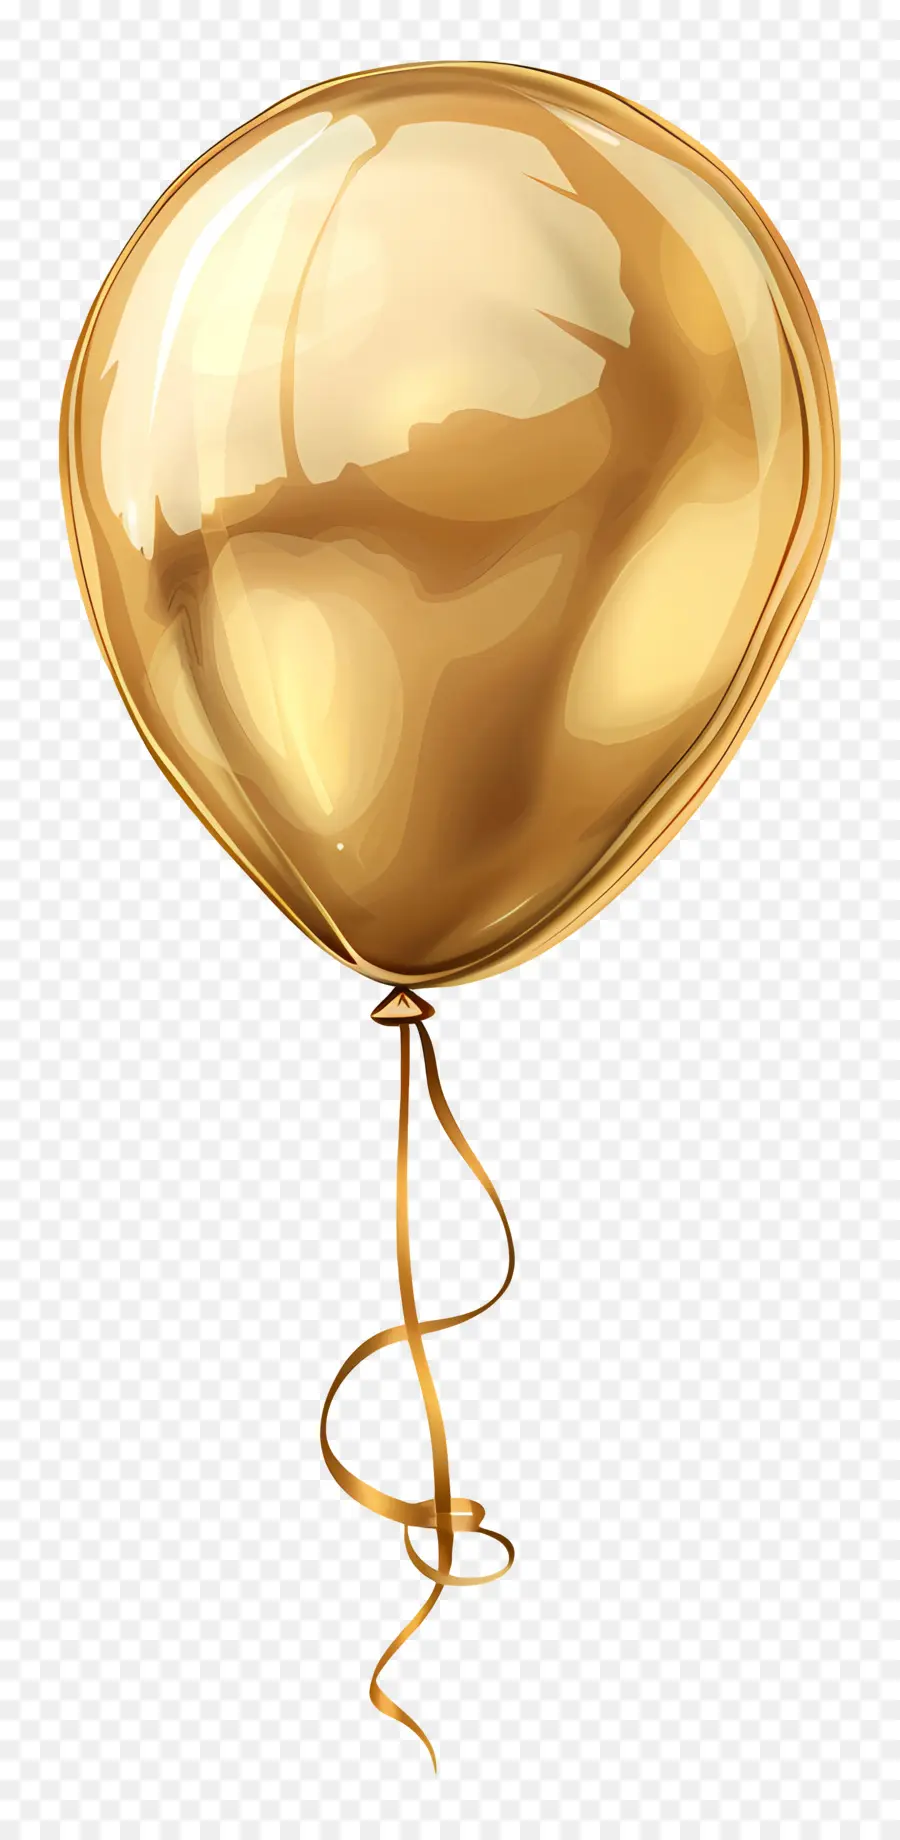 gold Ballon - Goldener Ballon schwebt mit Schnur in Luft